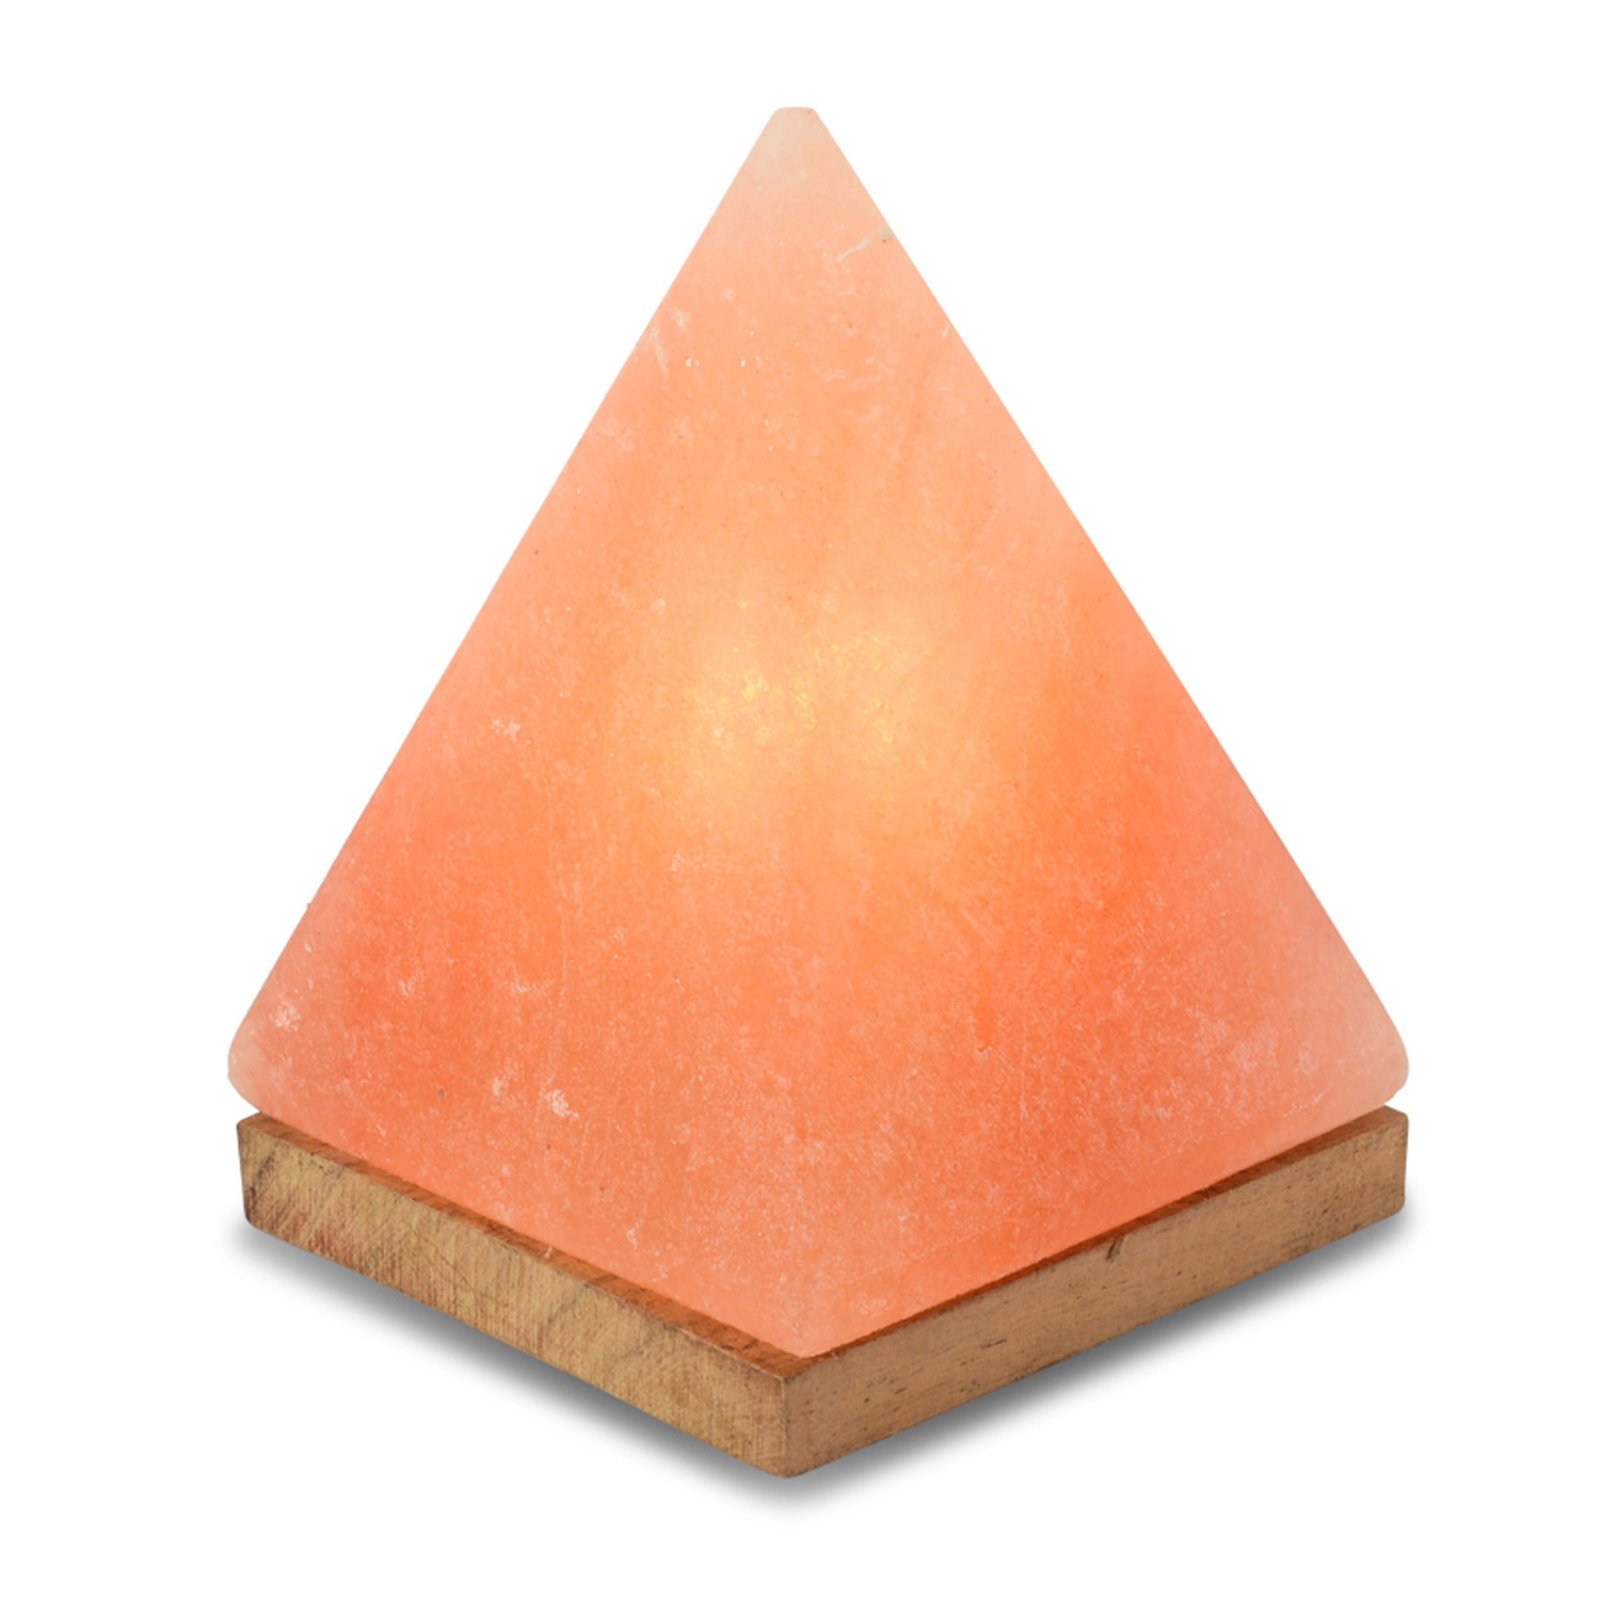 Zoutlamp Piramide met lamphouder, barnsteen